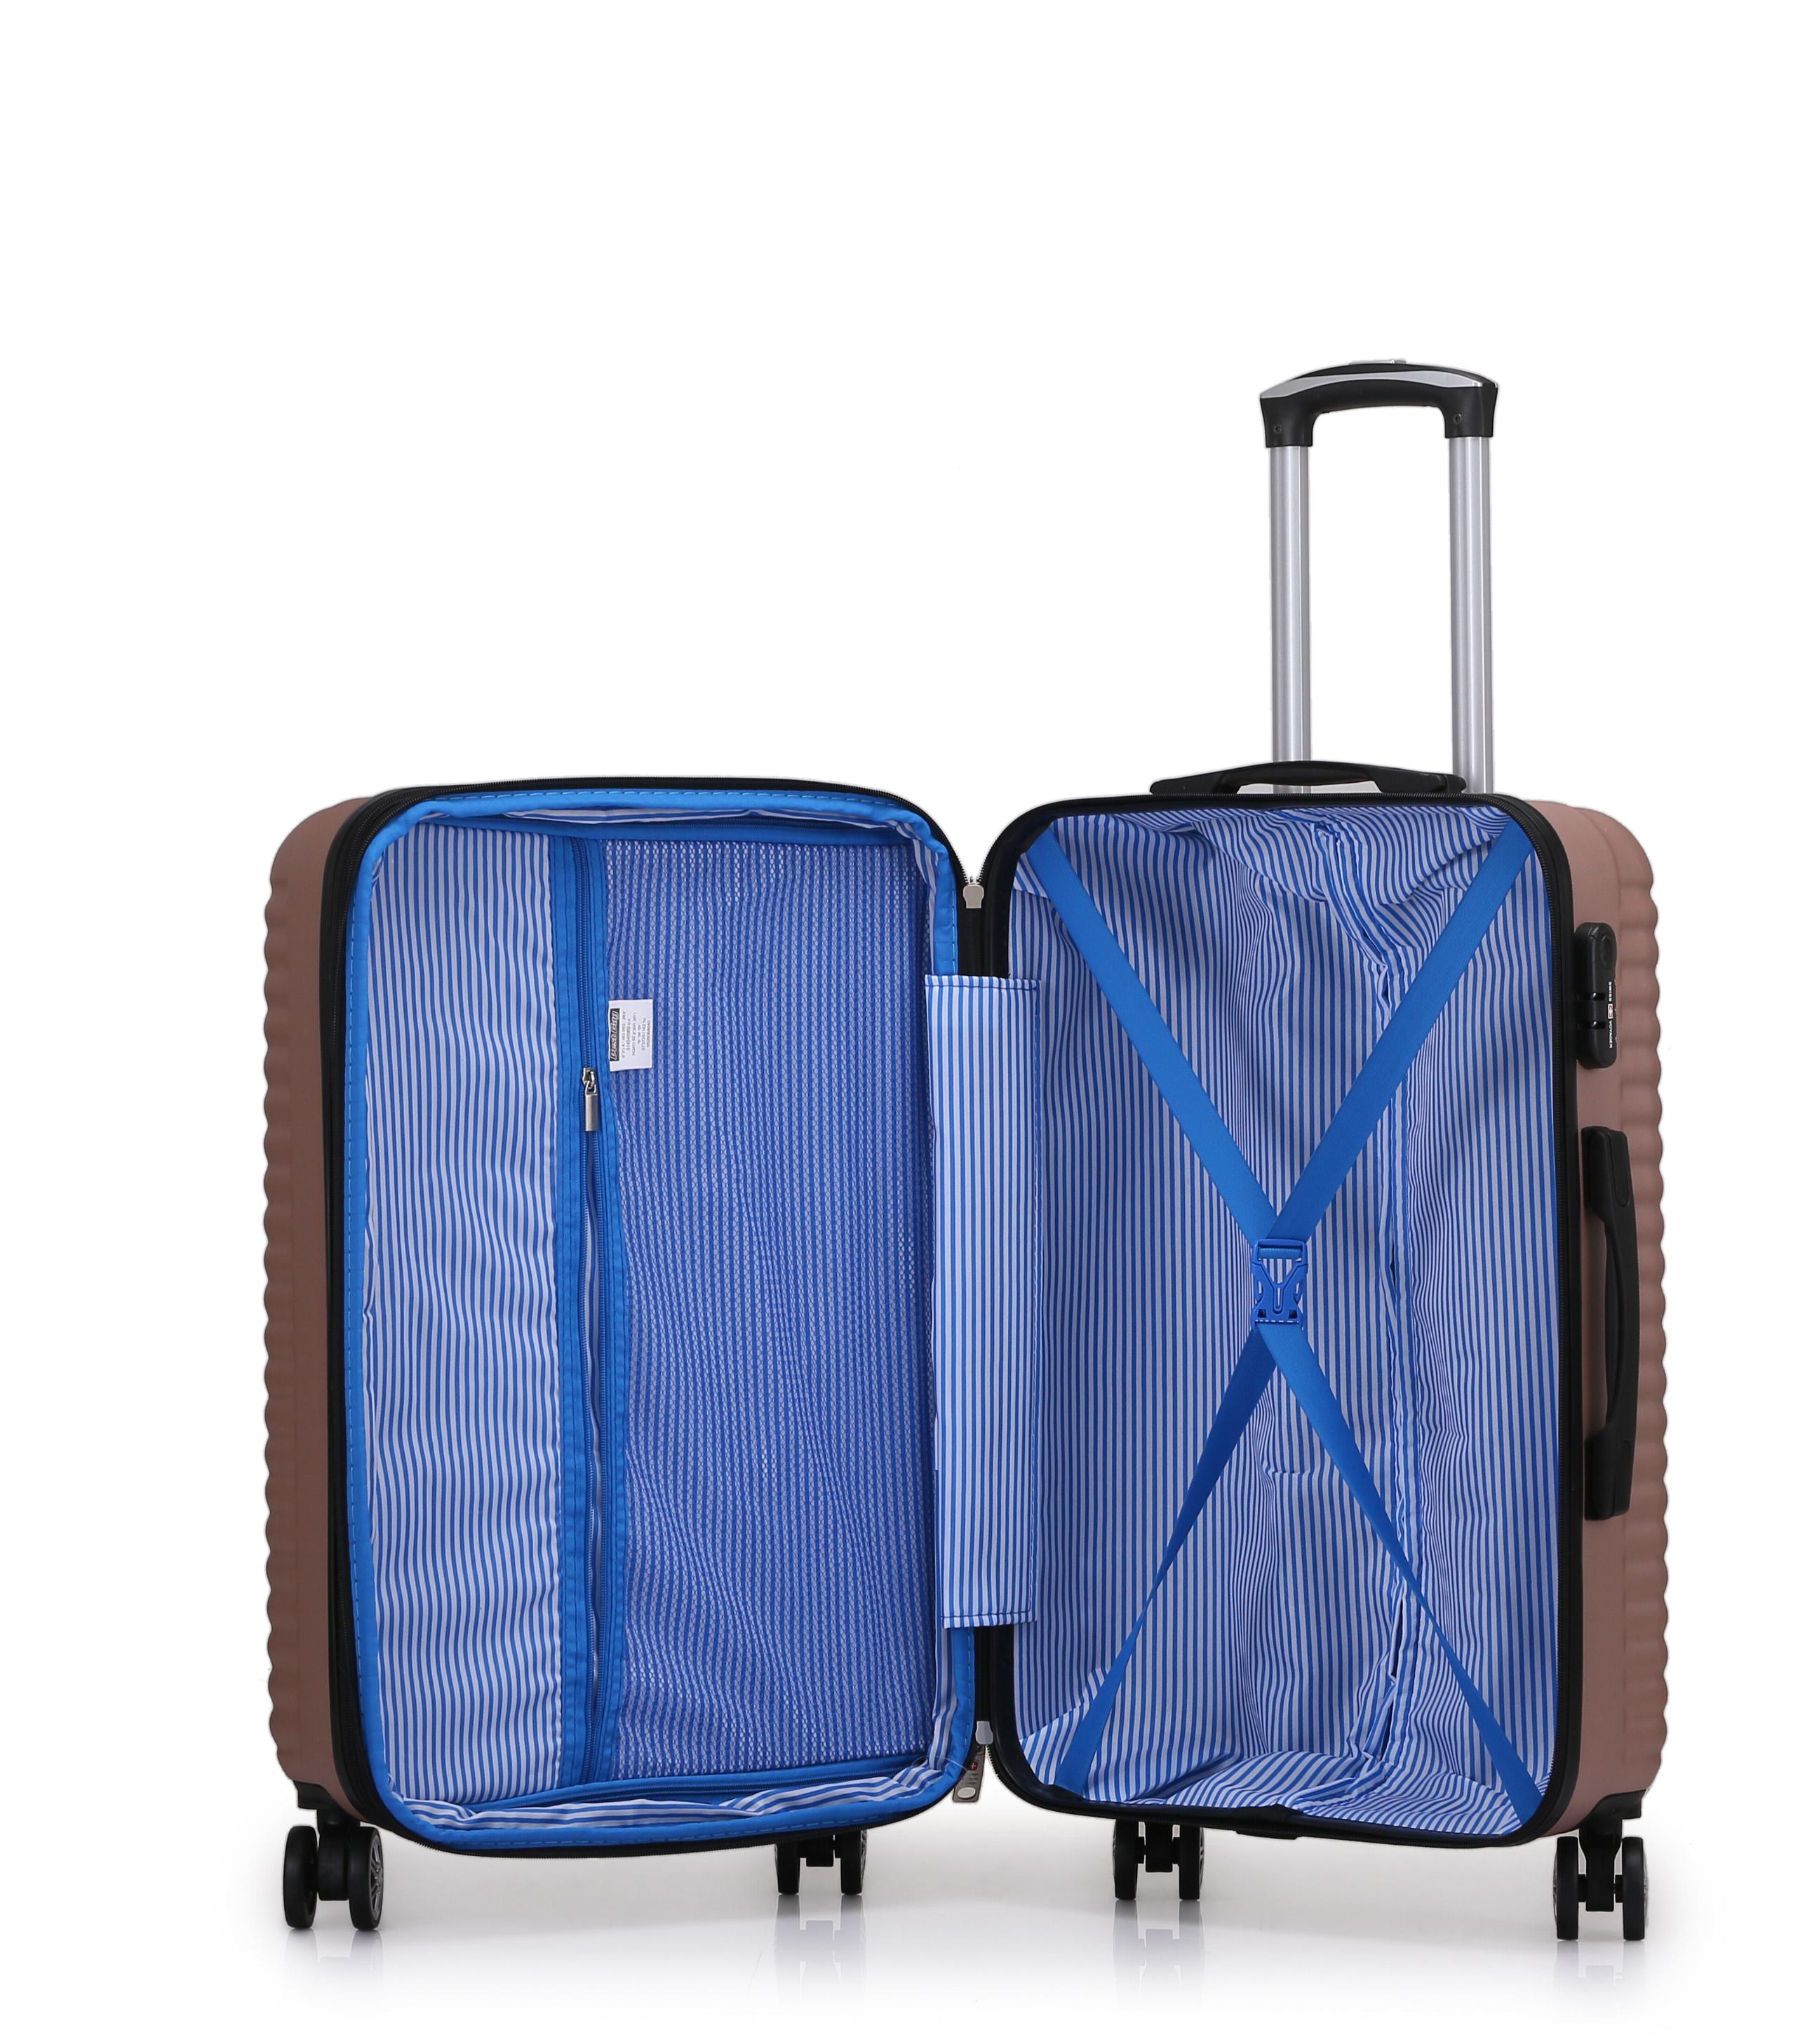 סט מזוודות קשיחות 3 יחידות מידות 28|24|20 אינץ' דגם London צבע רוז גולד Swiss Voyager - תיק איפור במתנה